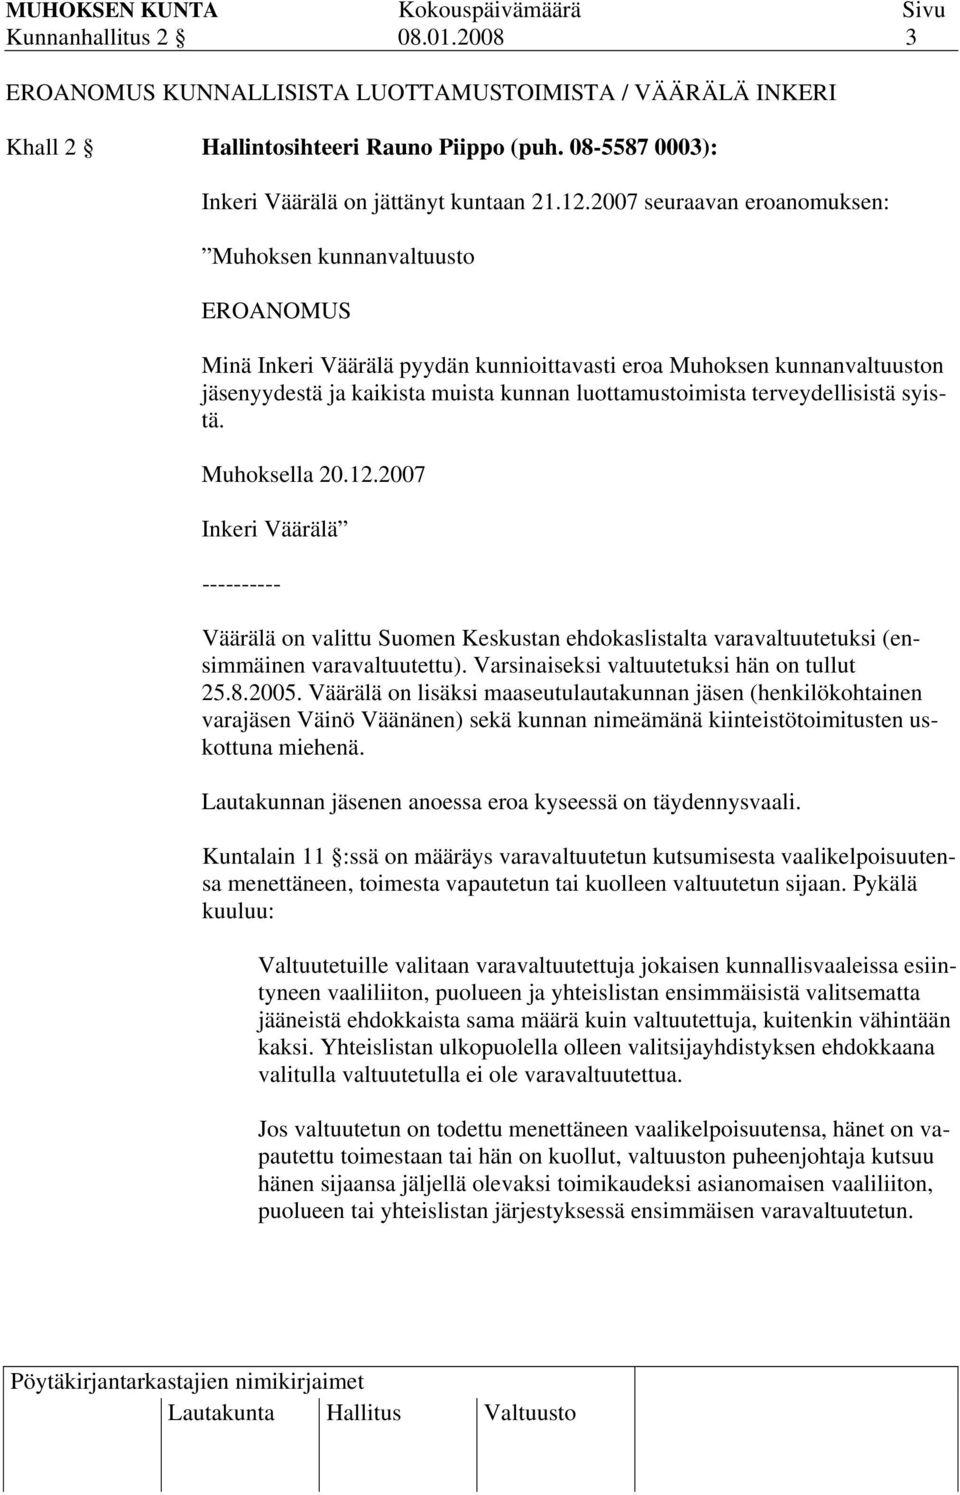 terveydellisistä syistä. Muhoksella 20.12.2007 Inkeri Väärälä ---------- Väärälä on valittu Suomen Keskustan ehdokaslistalta varavaltuutetuksi (ensimmäinen varavaltuutettu).